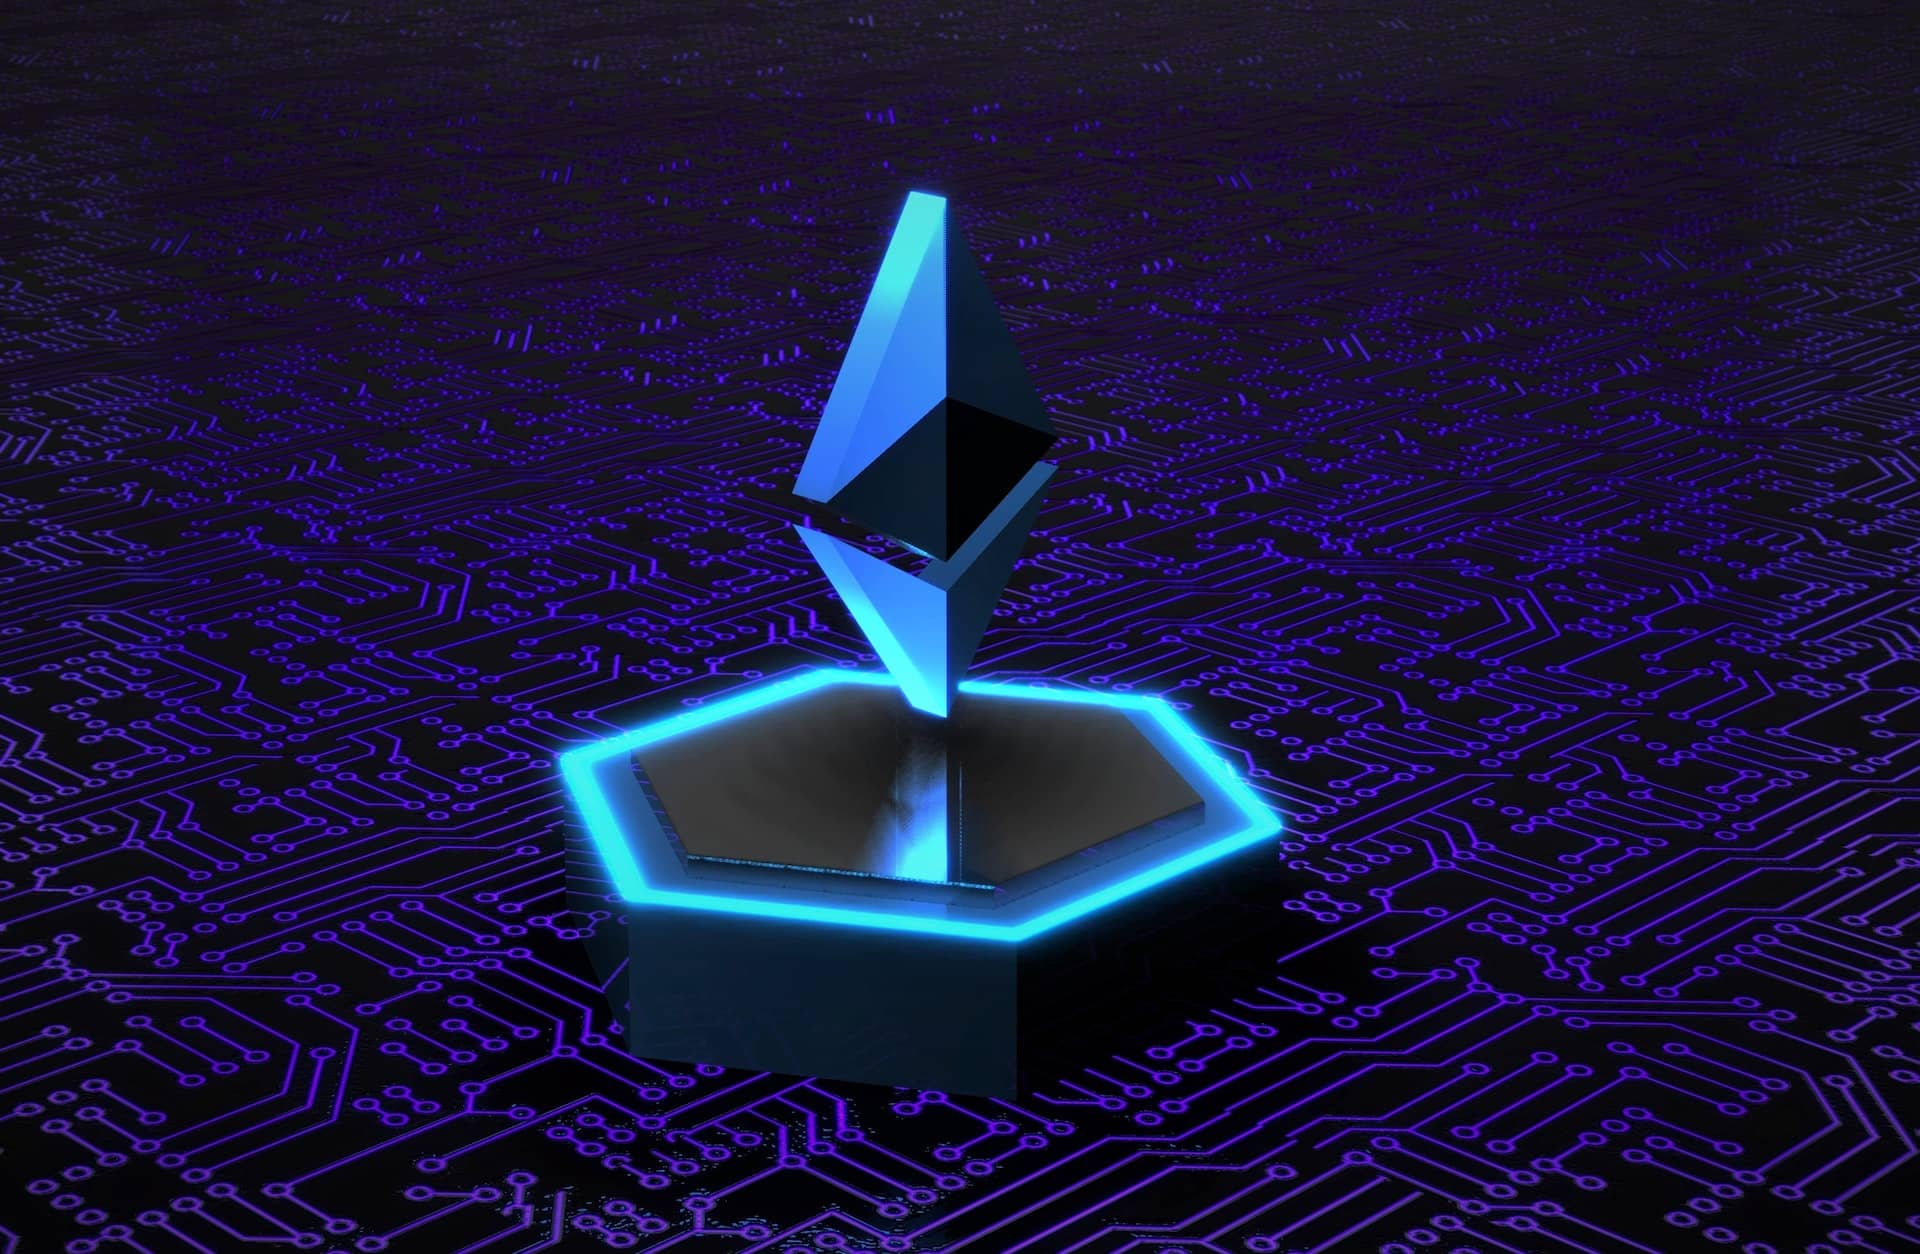 Imagem representando um token mostrando o símbolo da Ethereum sobre uma rede digital.